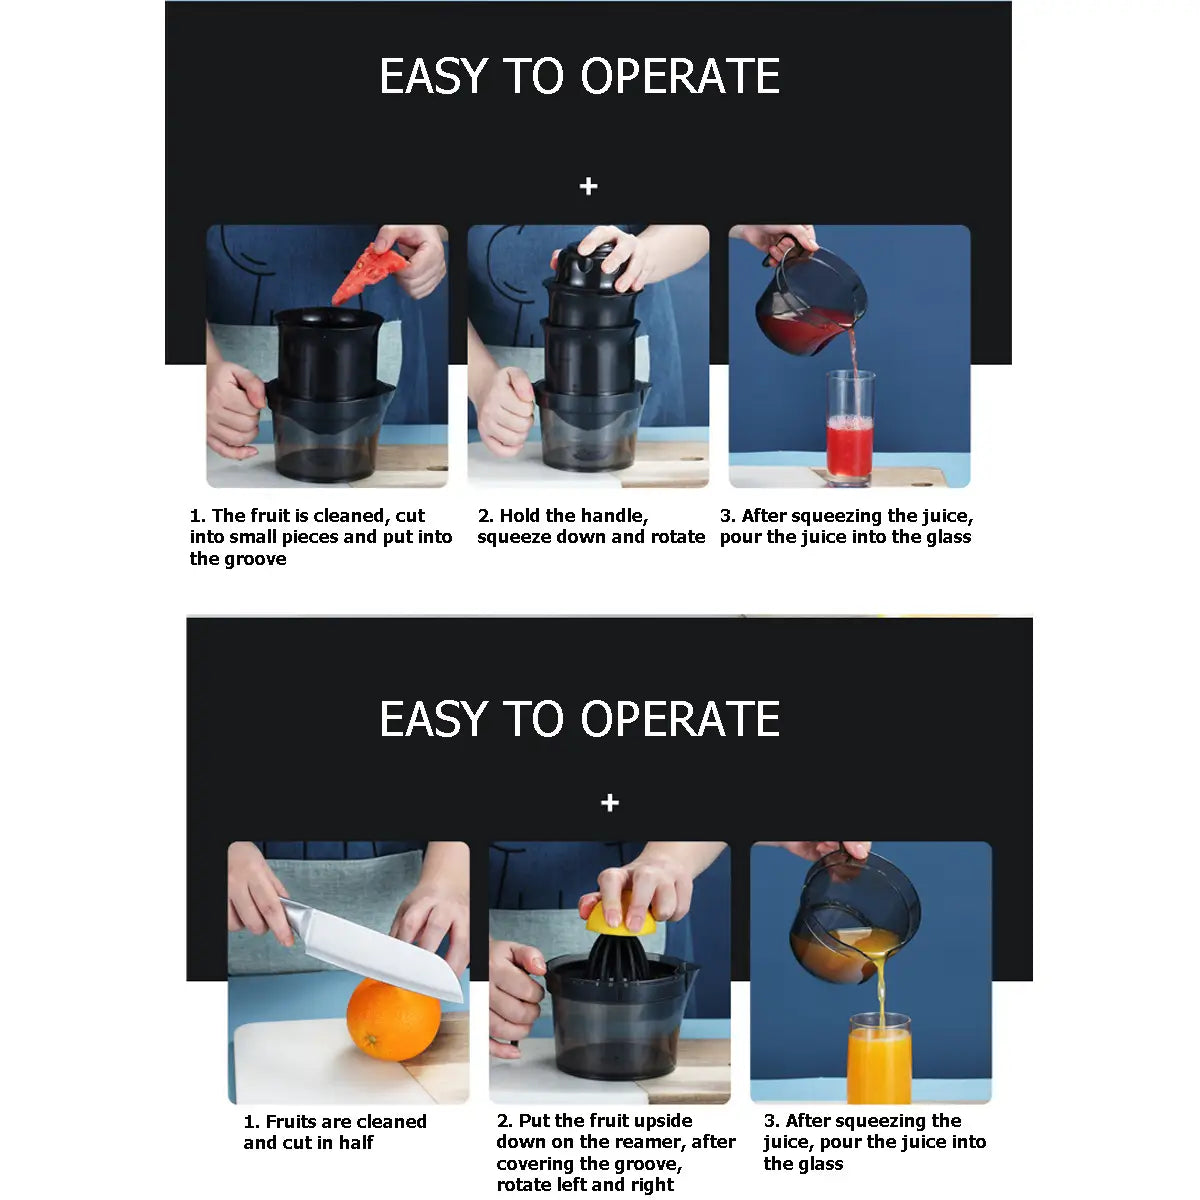 Manual Juicer Lemon Orange Squeezer Hand Press Extractor